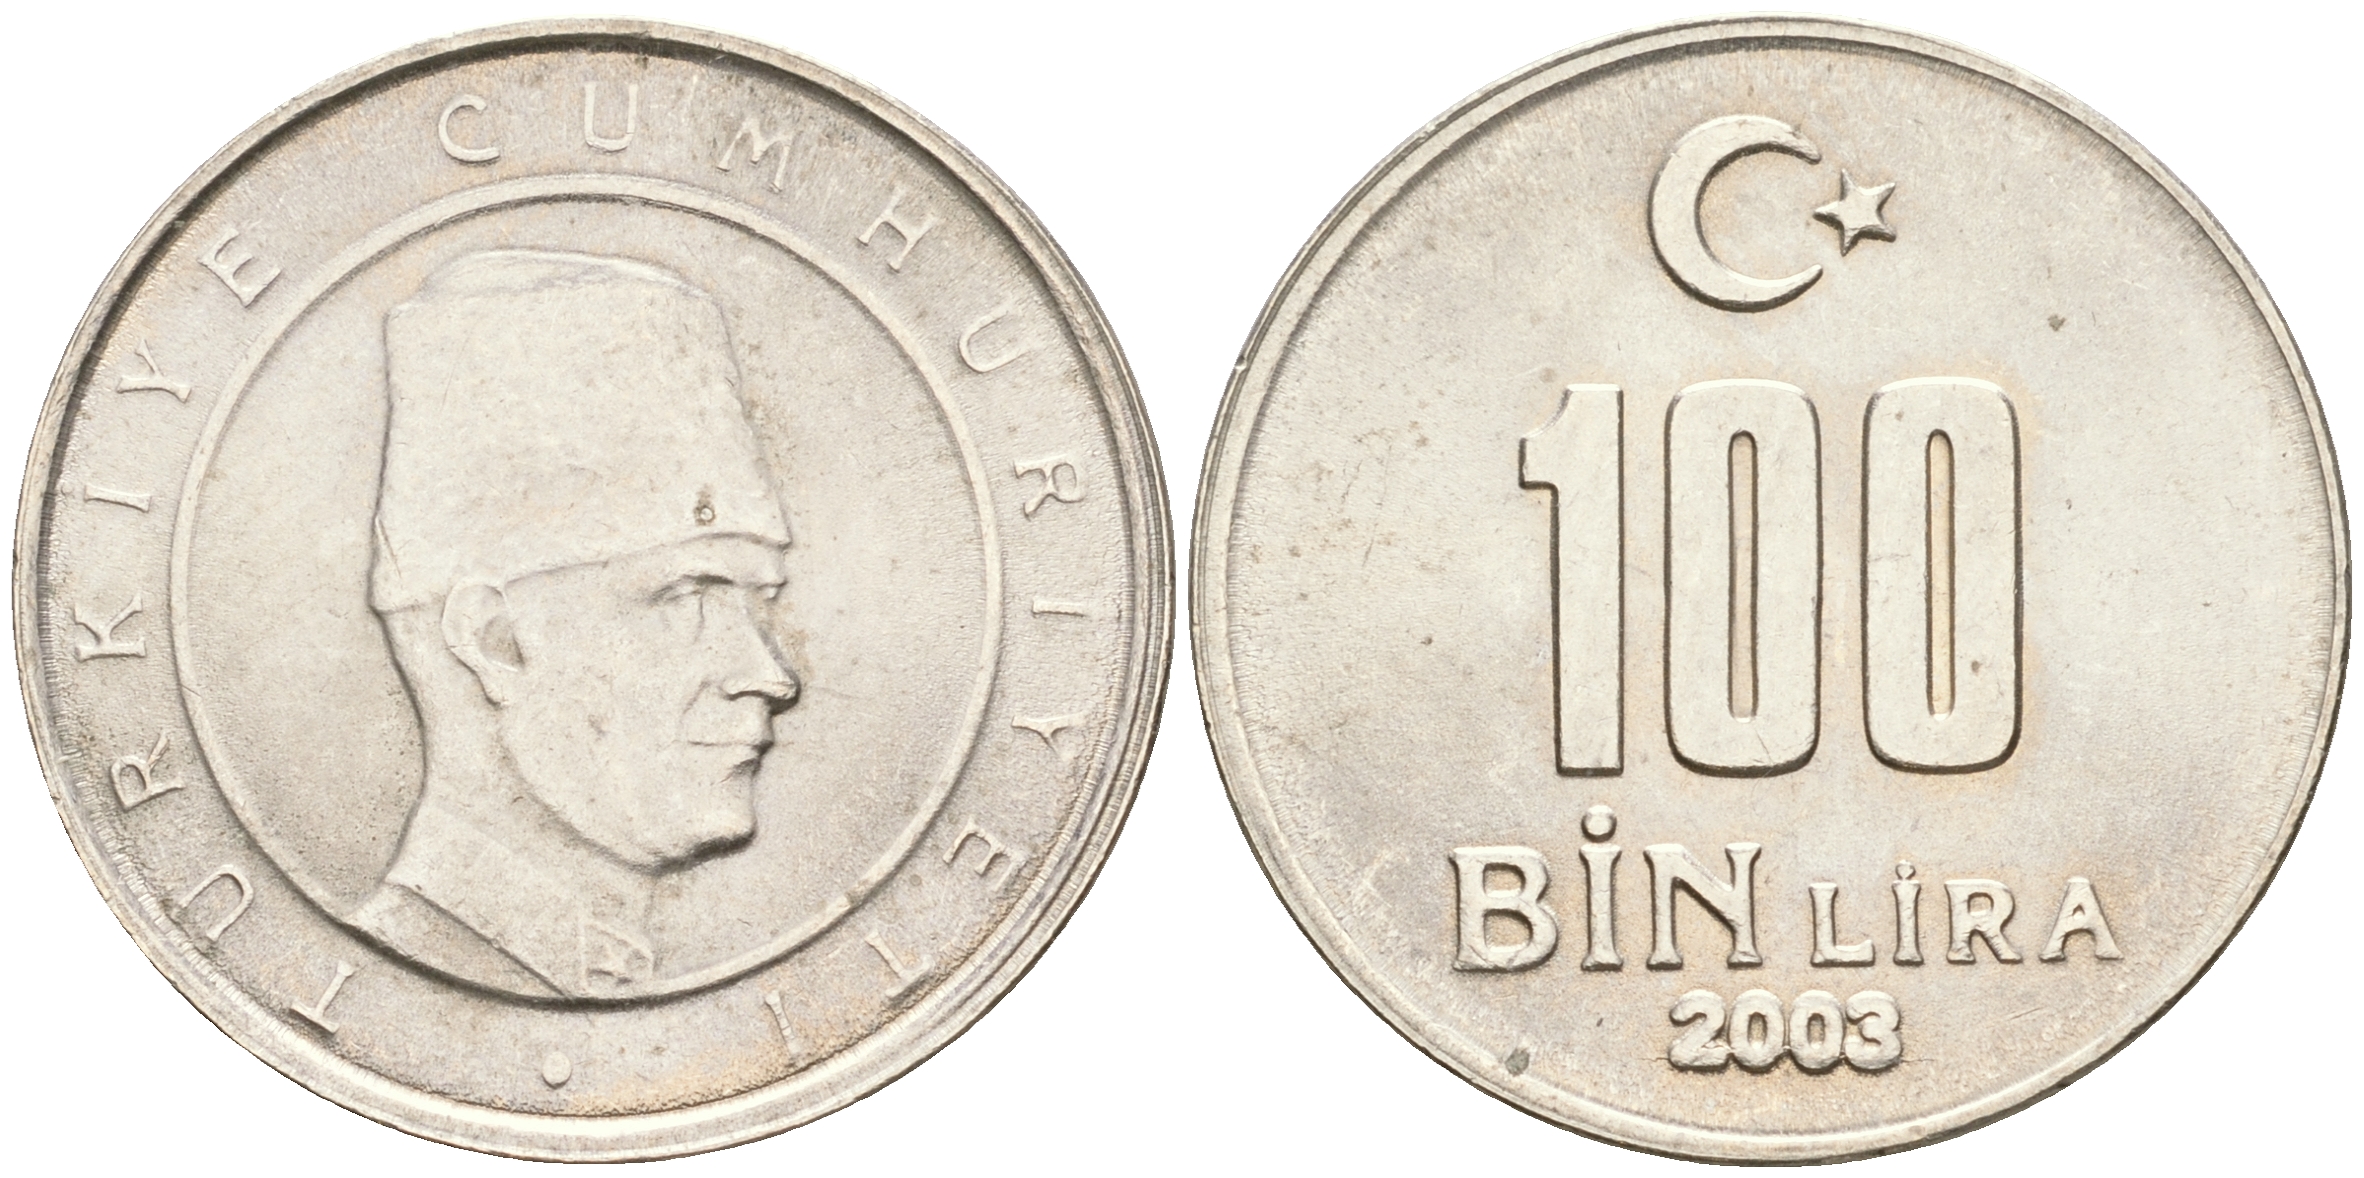 Монеты 2001 года цена стоимость монеты